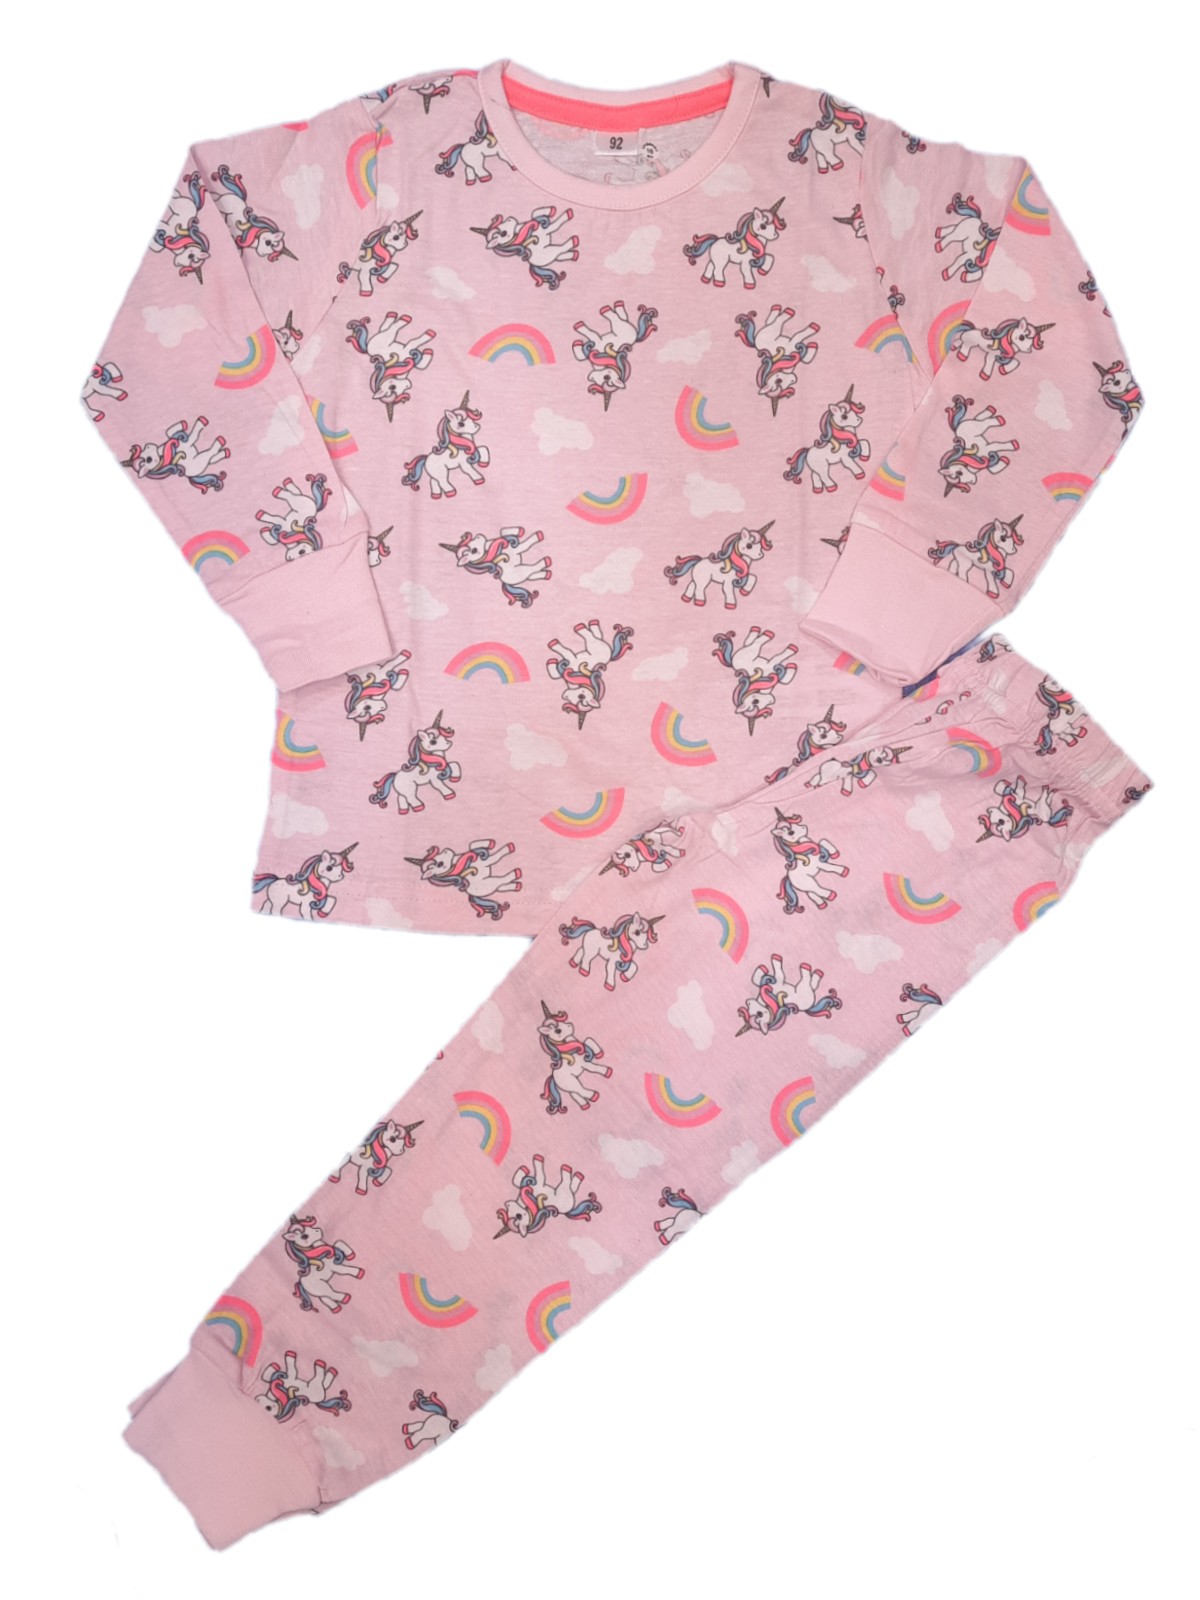 Girls T-shirt Payjama Set-D2575